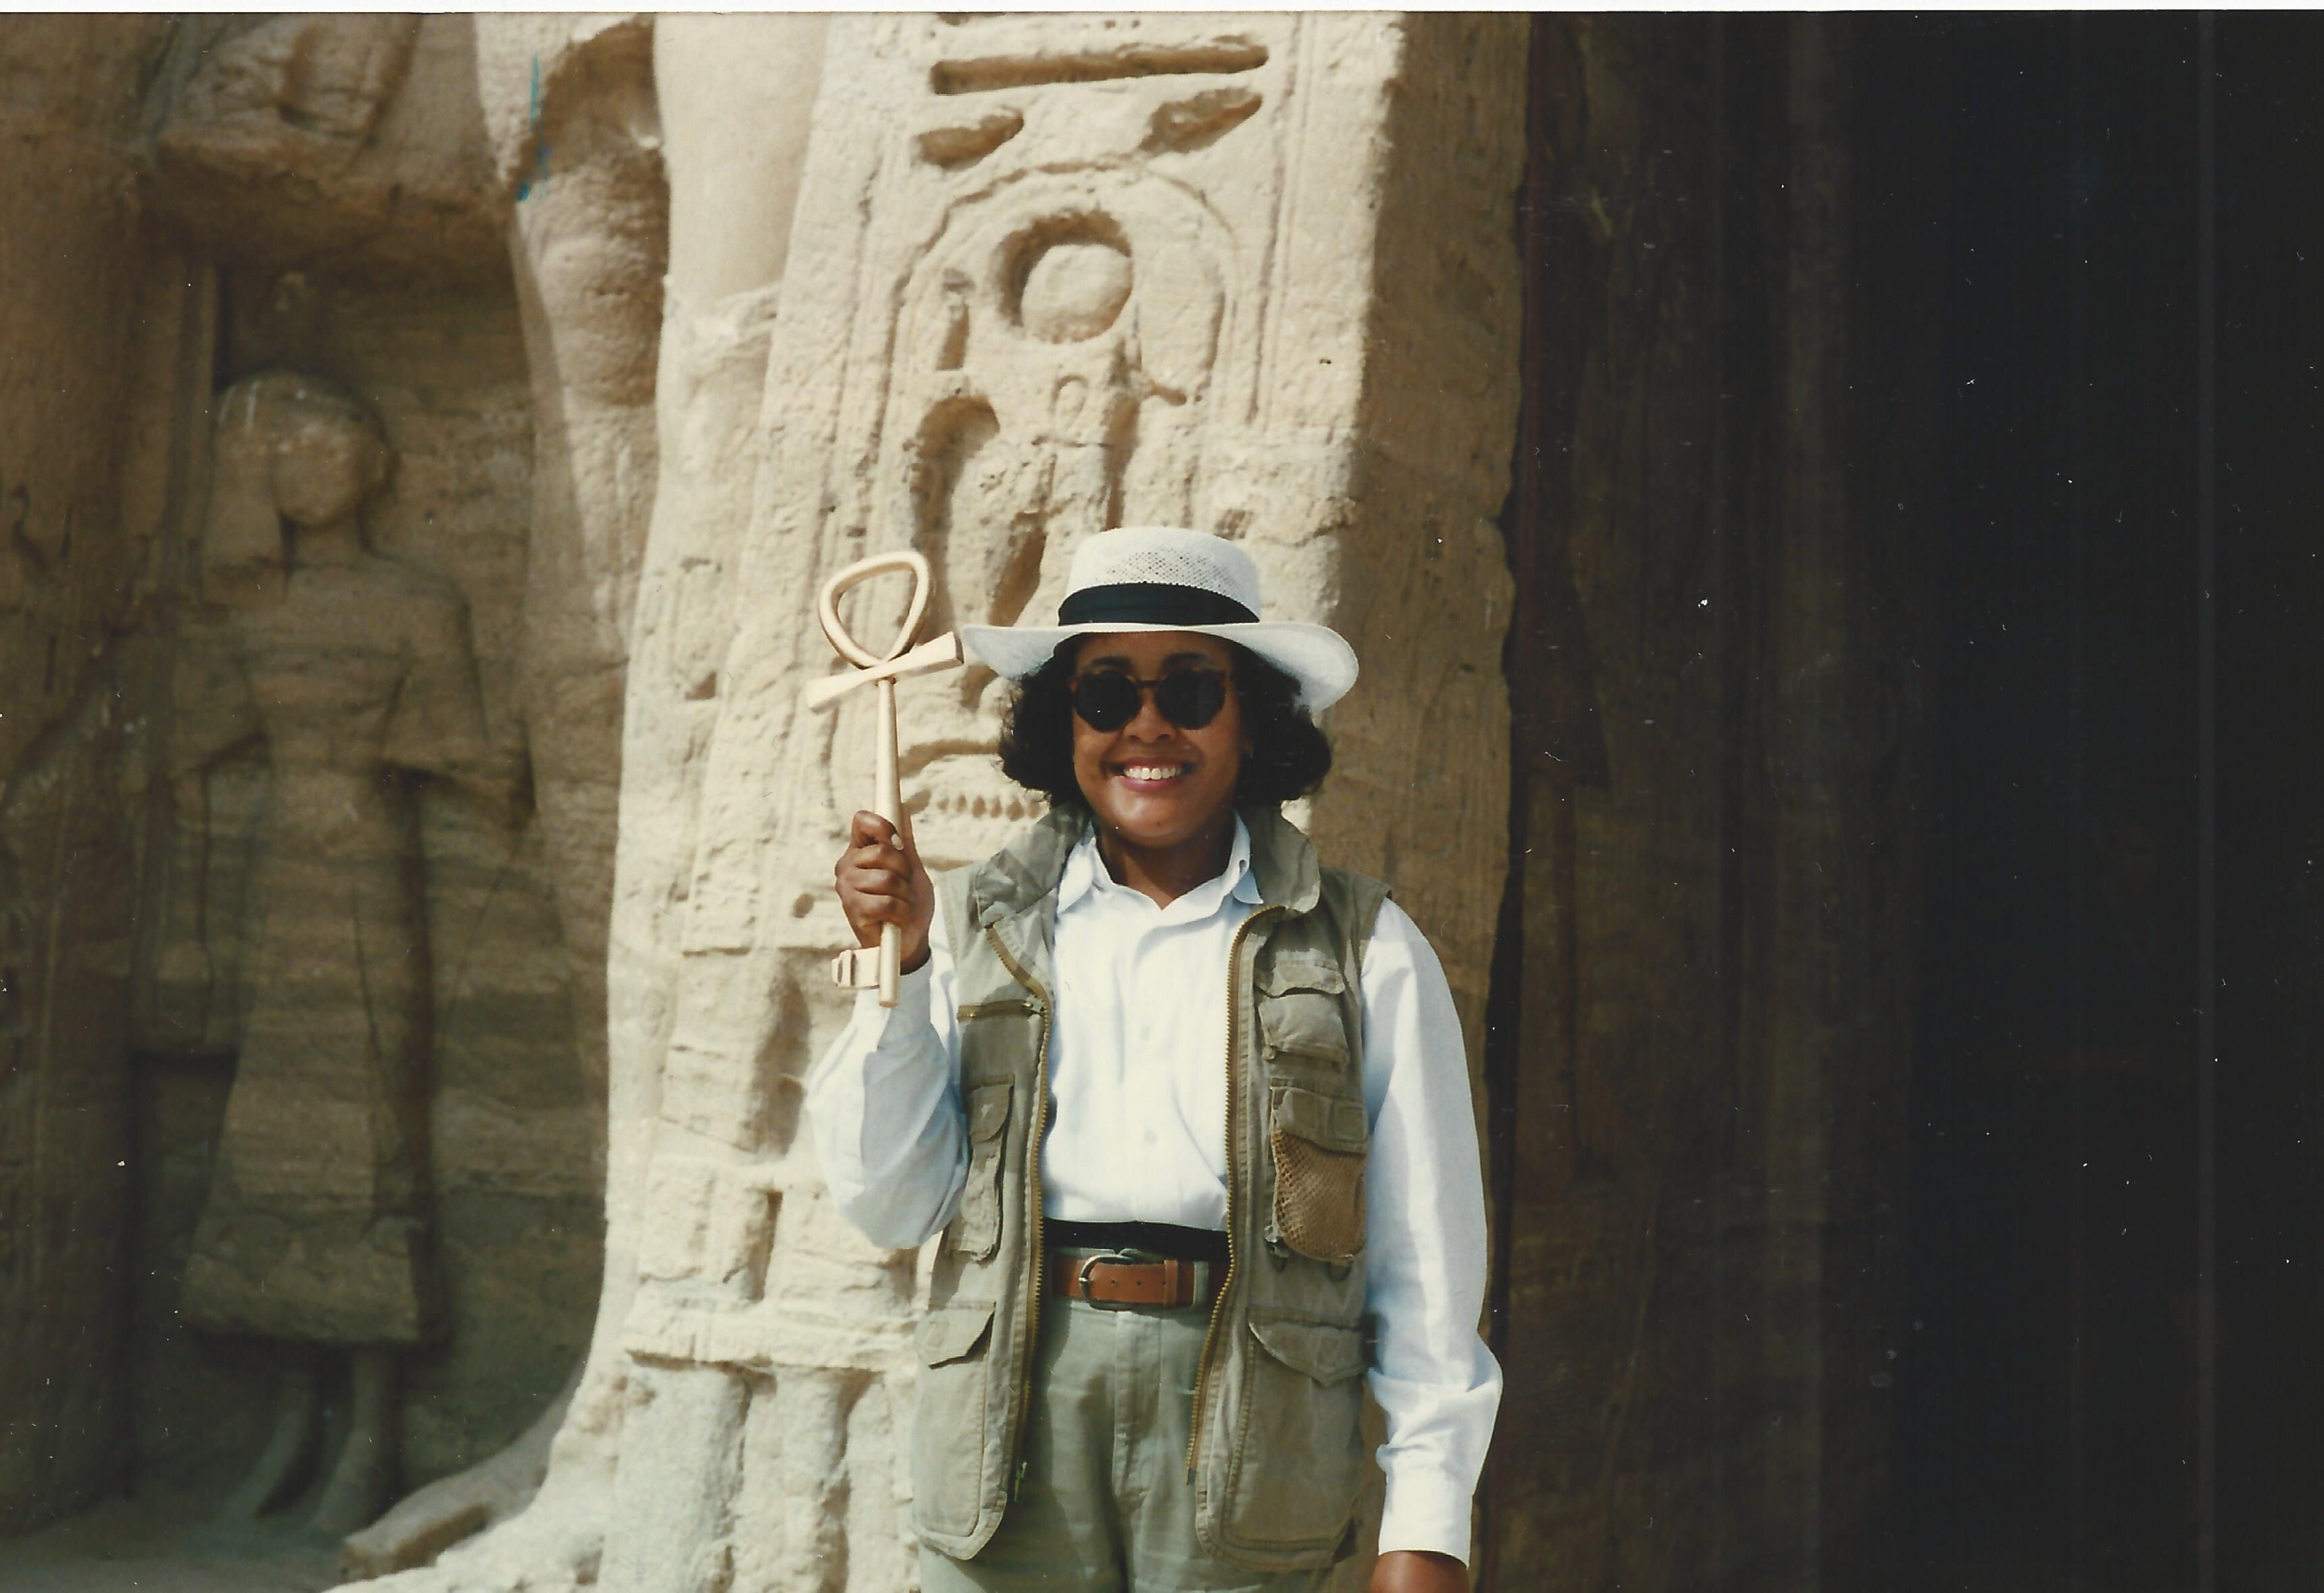 Gail Campbell Woolley en Égypte, 1996. Le temple d'Abu Simbel. Gail tient un ankh ou "clé de vie".